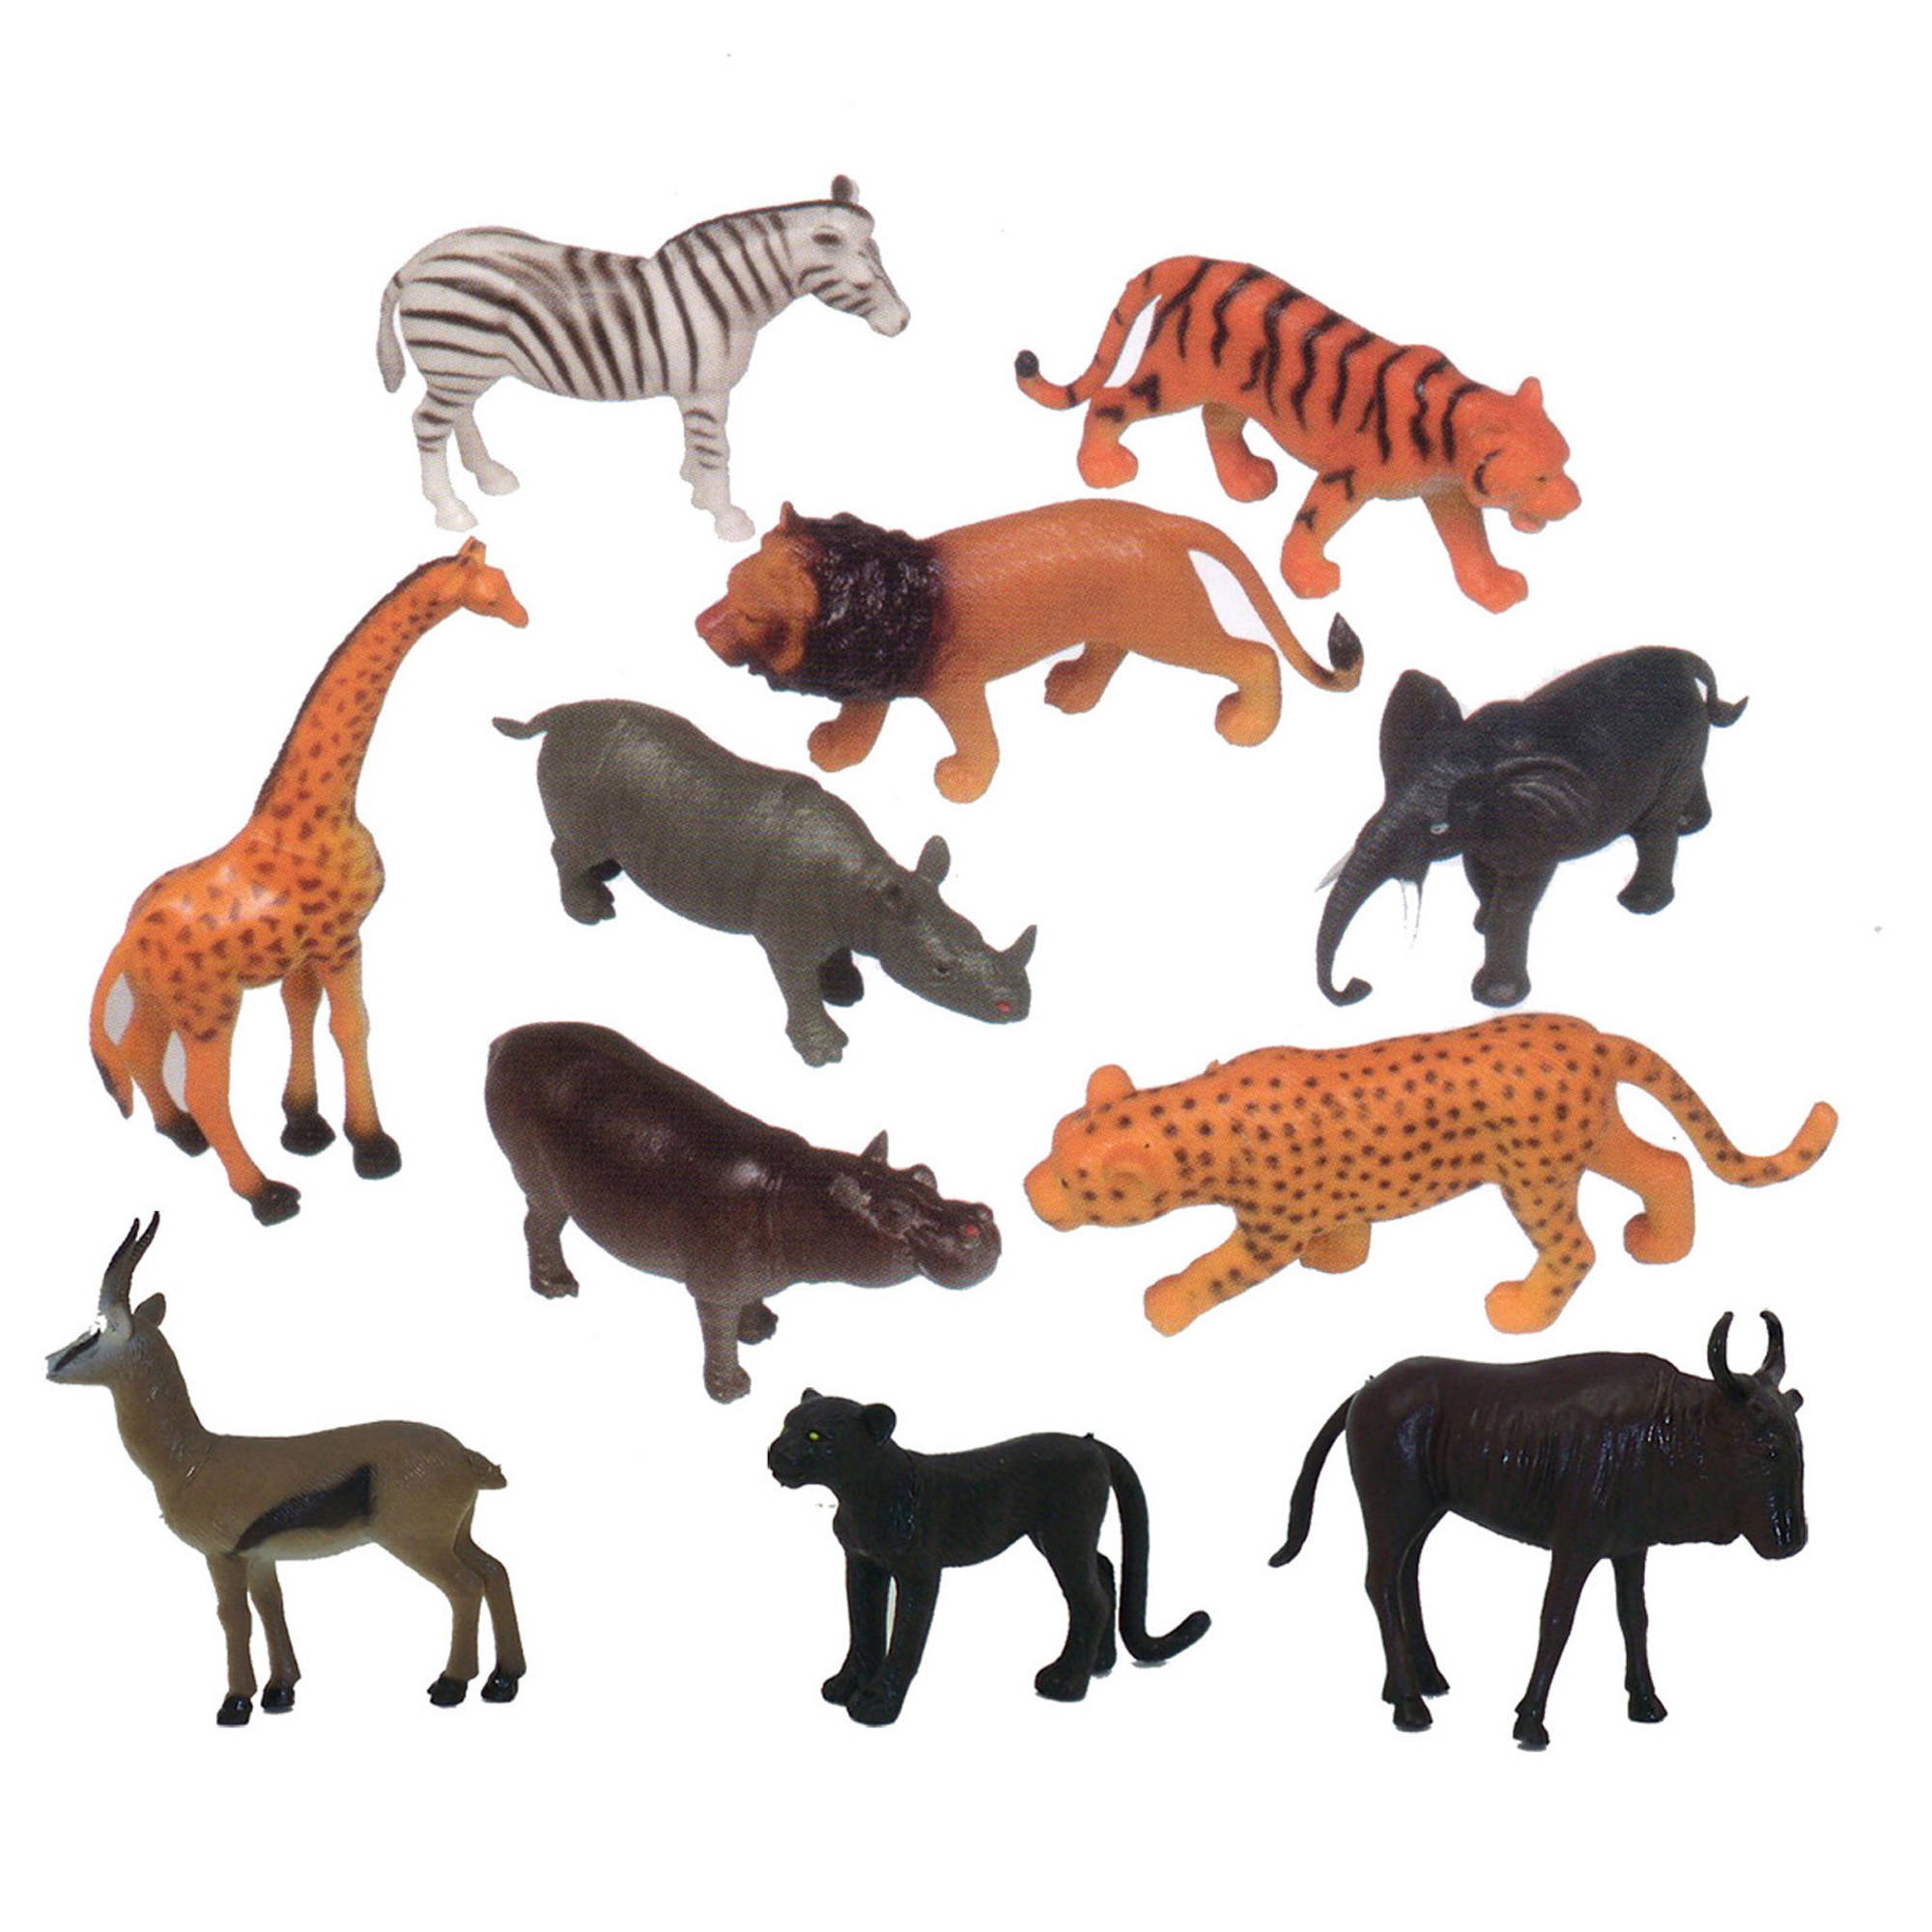 Plastic animals. Игрушки животные. Фигурки животных для детей. Набор фигурок животных. Пластмассовые игрушки животные.